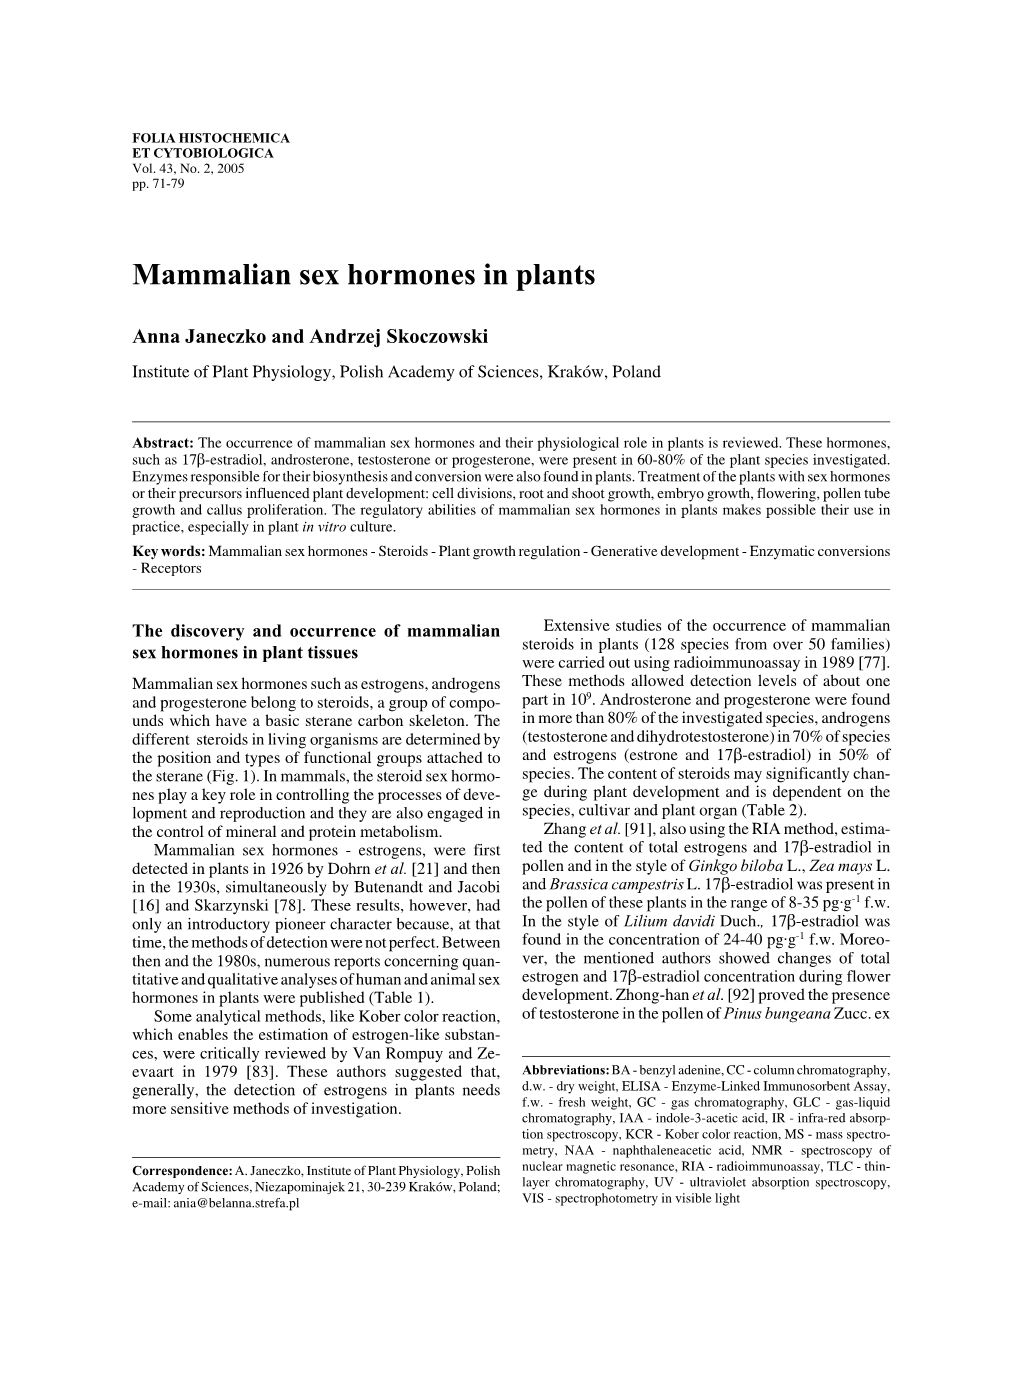 Mammalian Sex Hormones in Plants